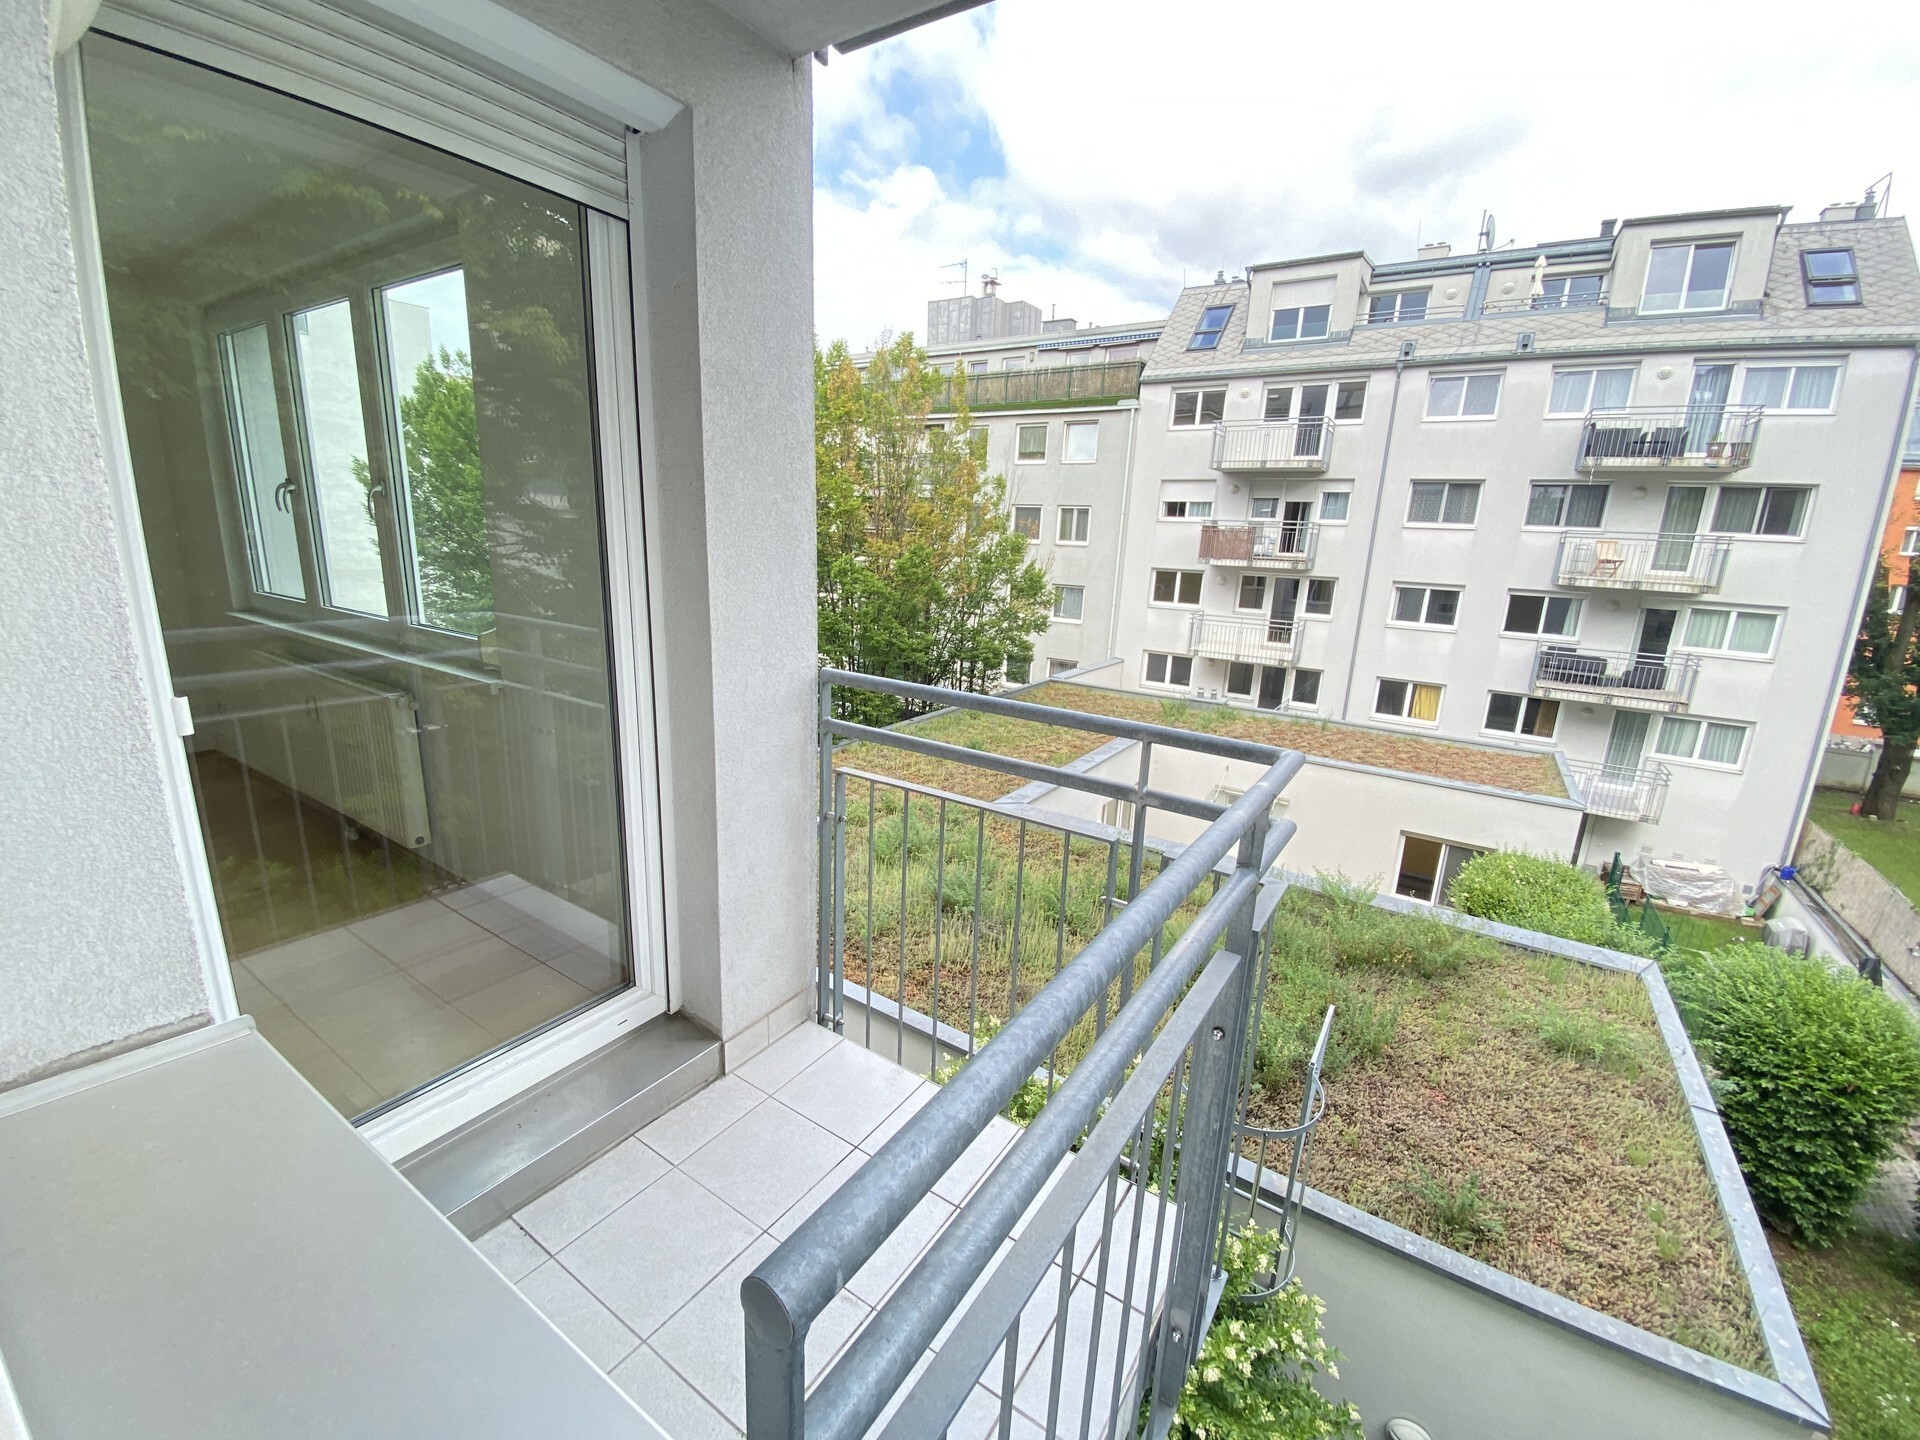 Smarte 2-Zimmer Wohnung bei der Schmelz mit Balkon und Garagenstellplatz - zu kaufen in 1160 Wien